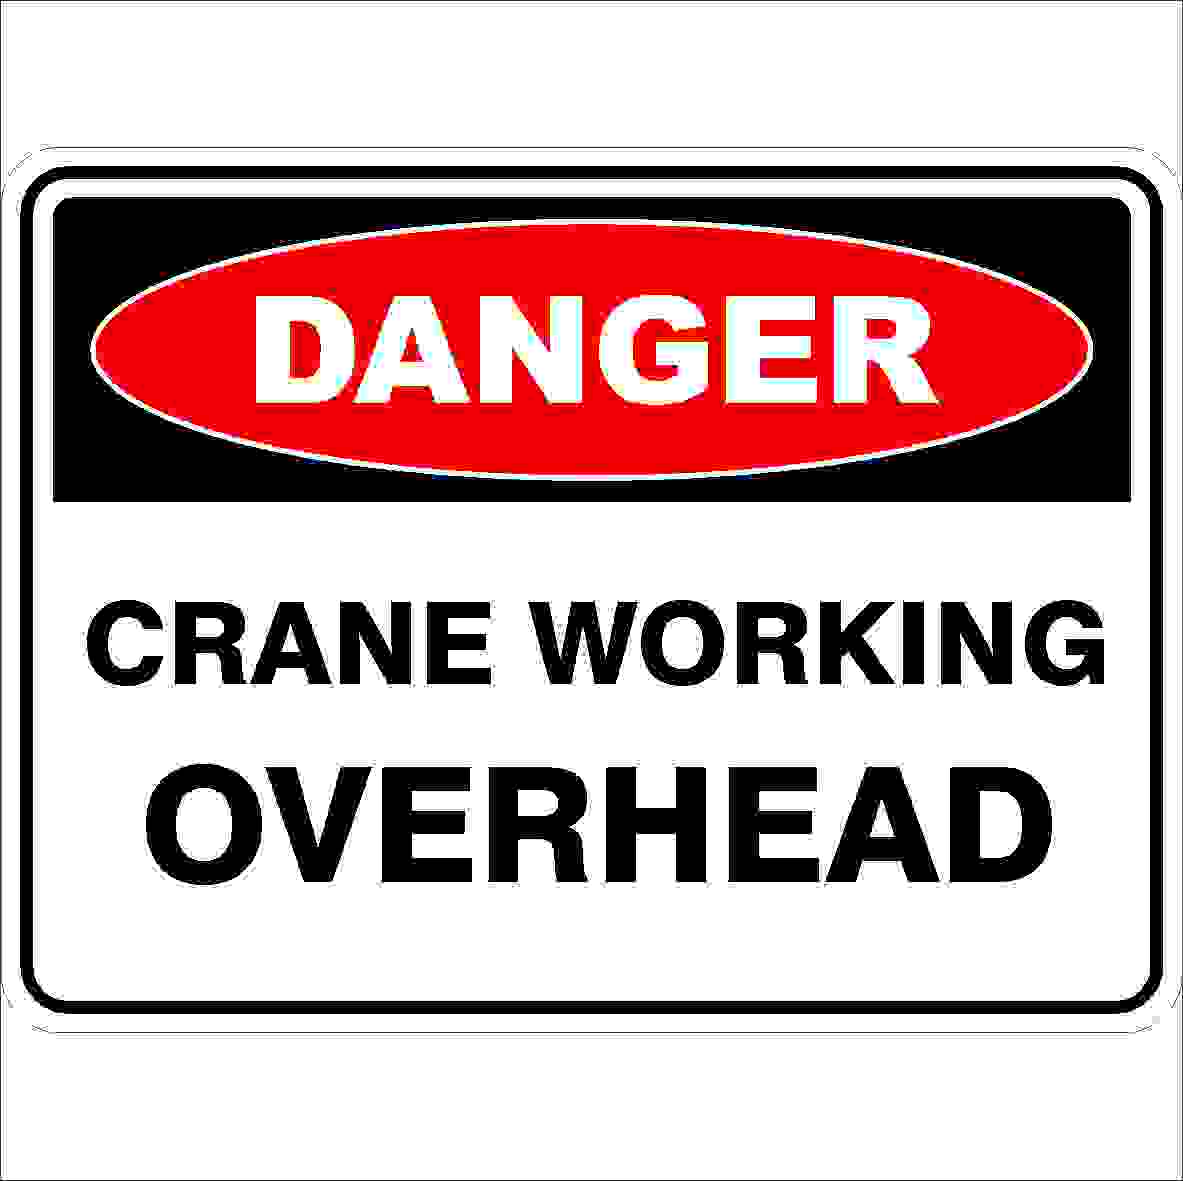 Danger Signs CRANE WORKING OVERHEAD